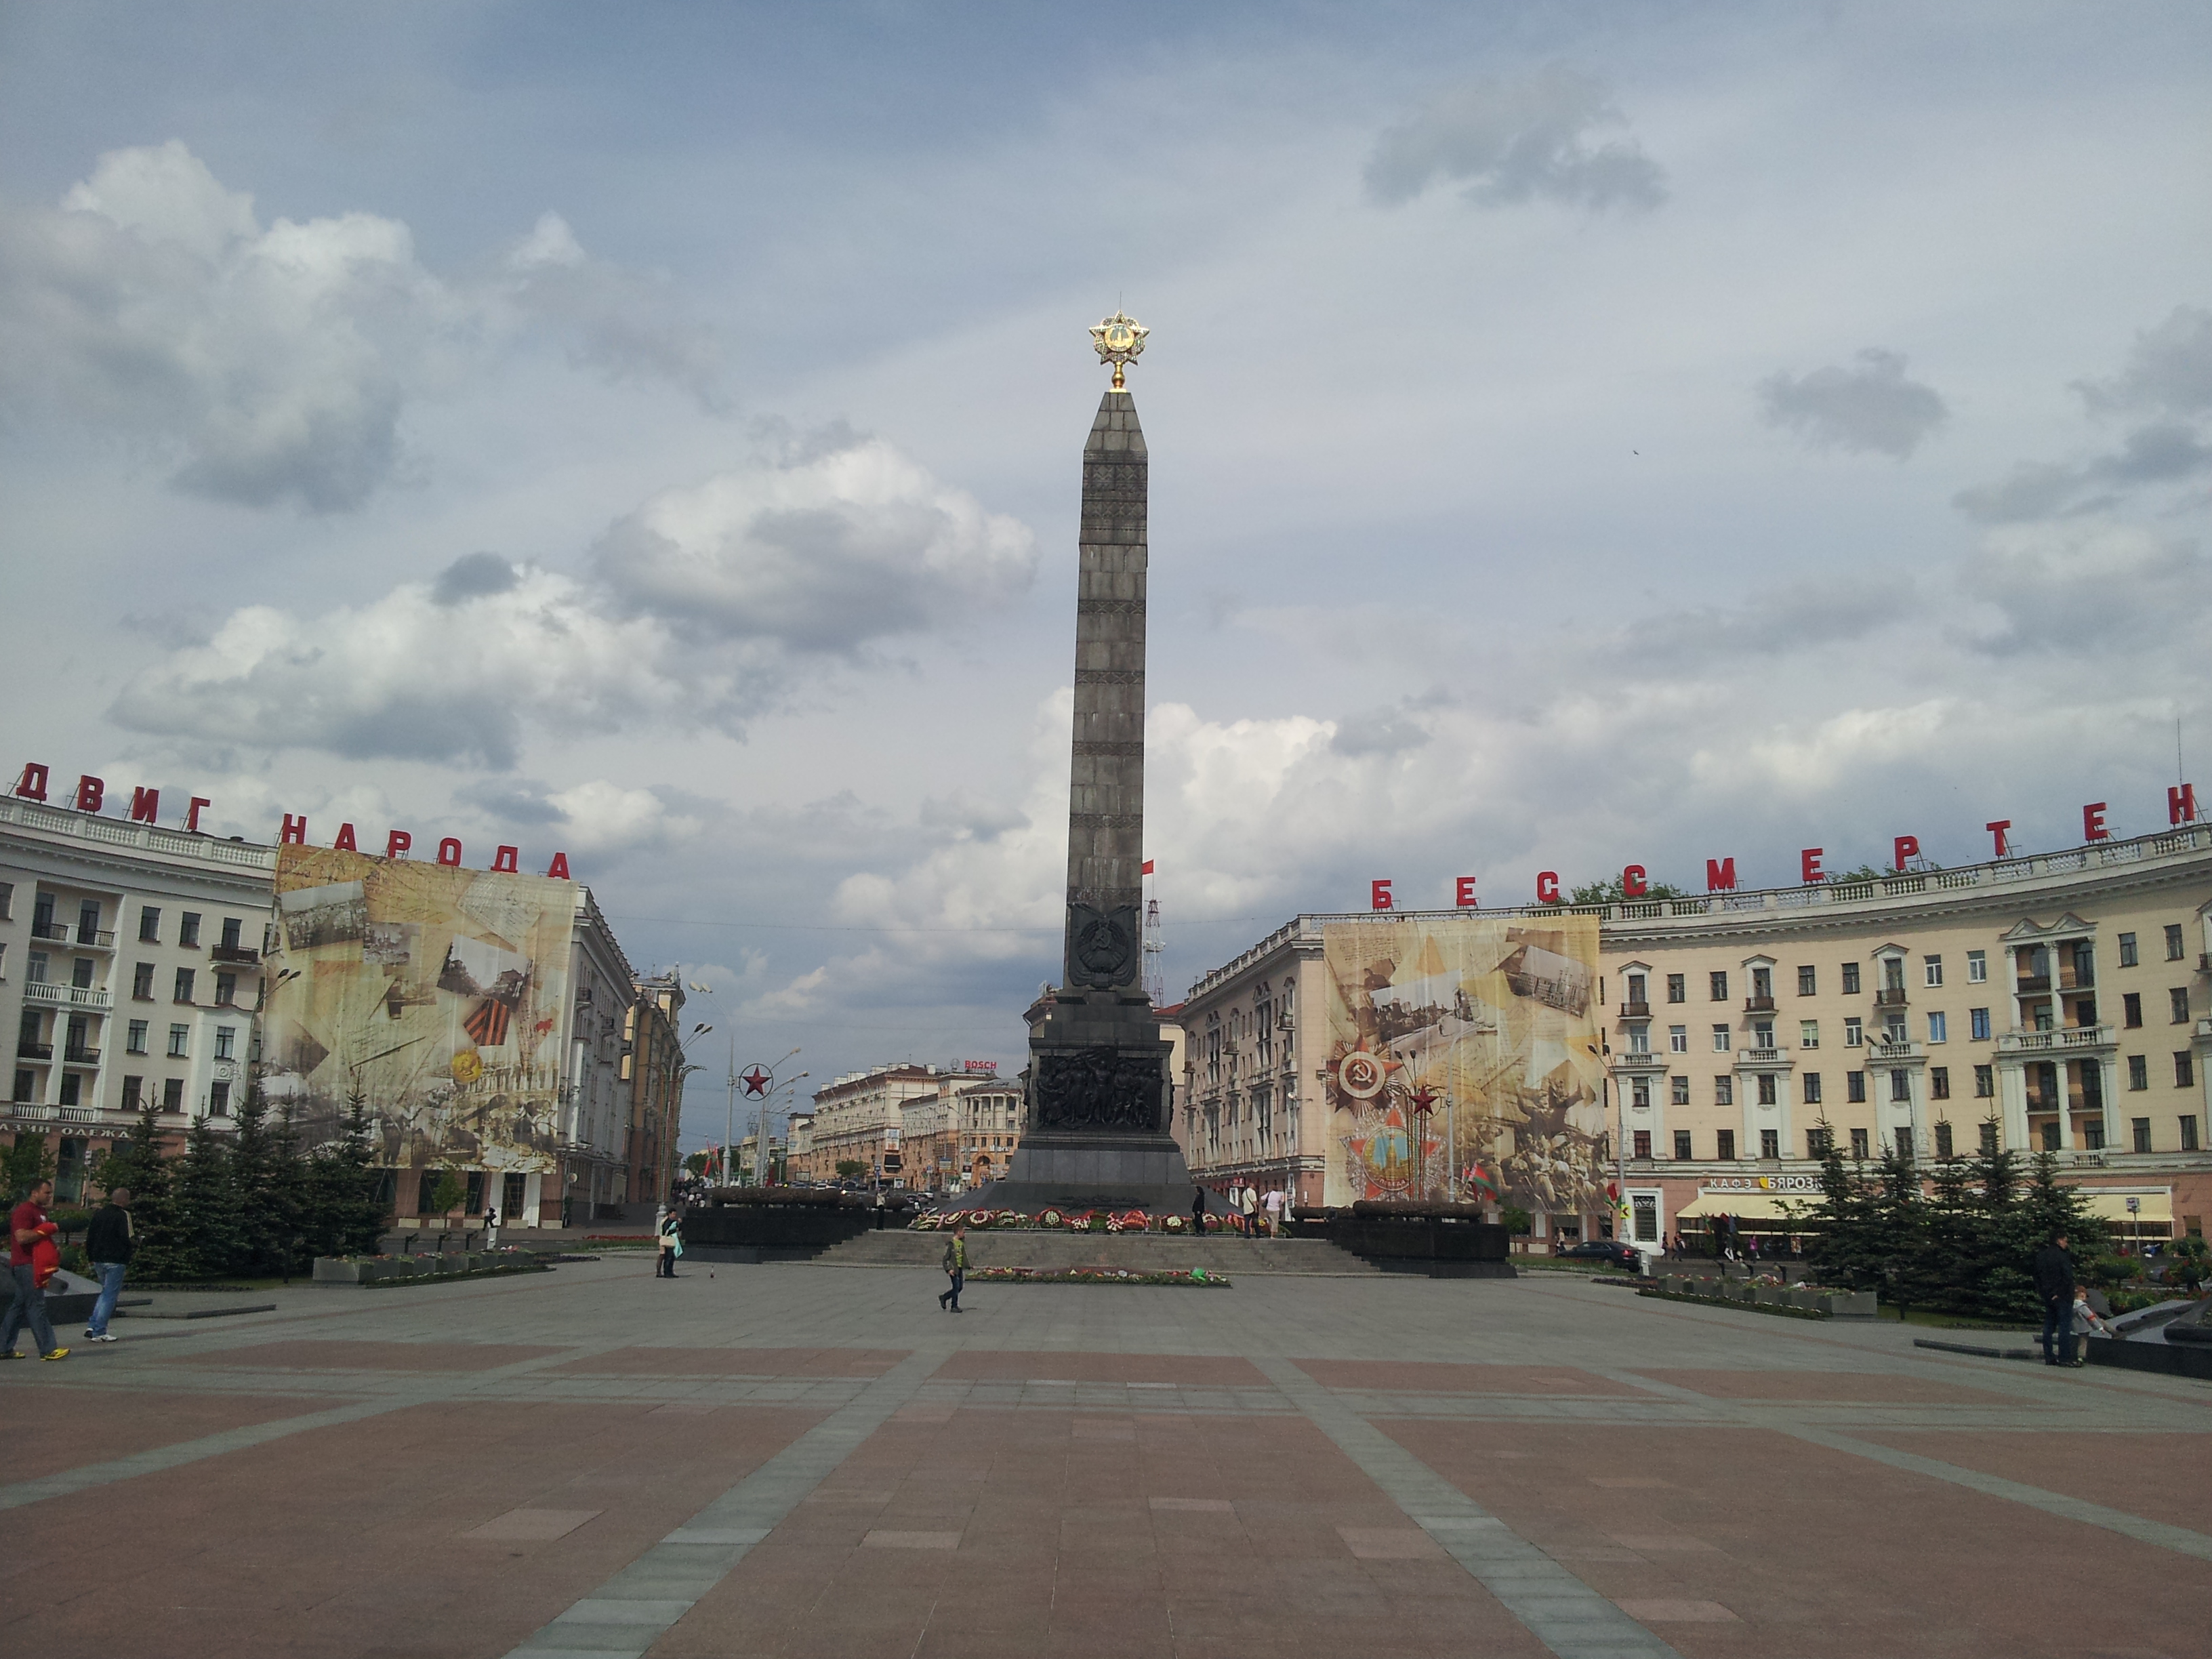 Minsk, capital of Belarus